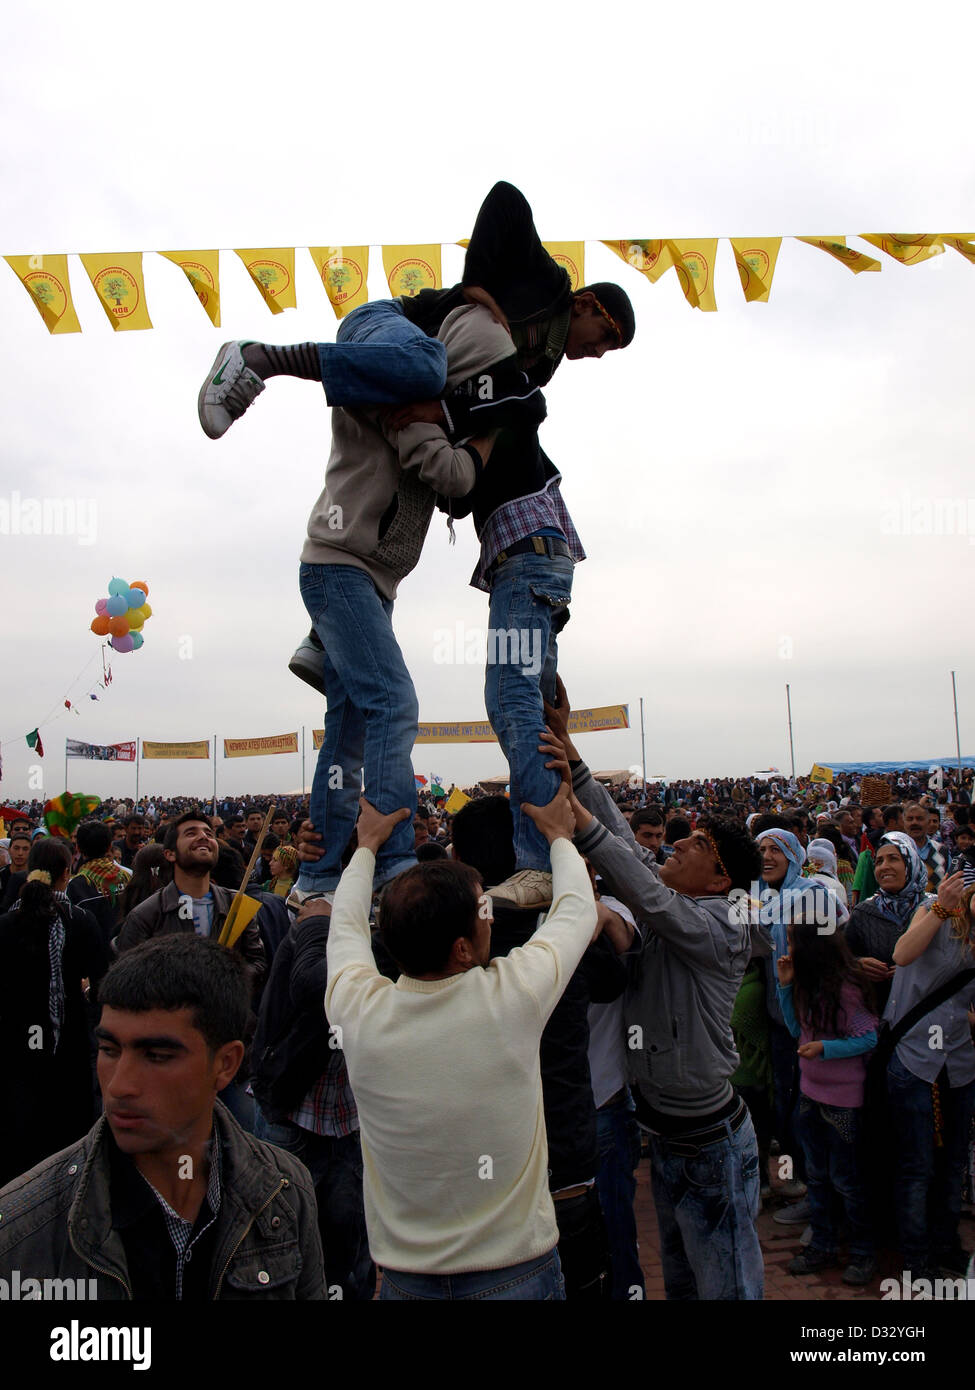 Les jeunes Kurdes faire des droits de l'tower au cours de Nevruz à Diyarbakir, Turquie. Banque D'Images